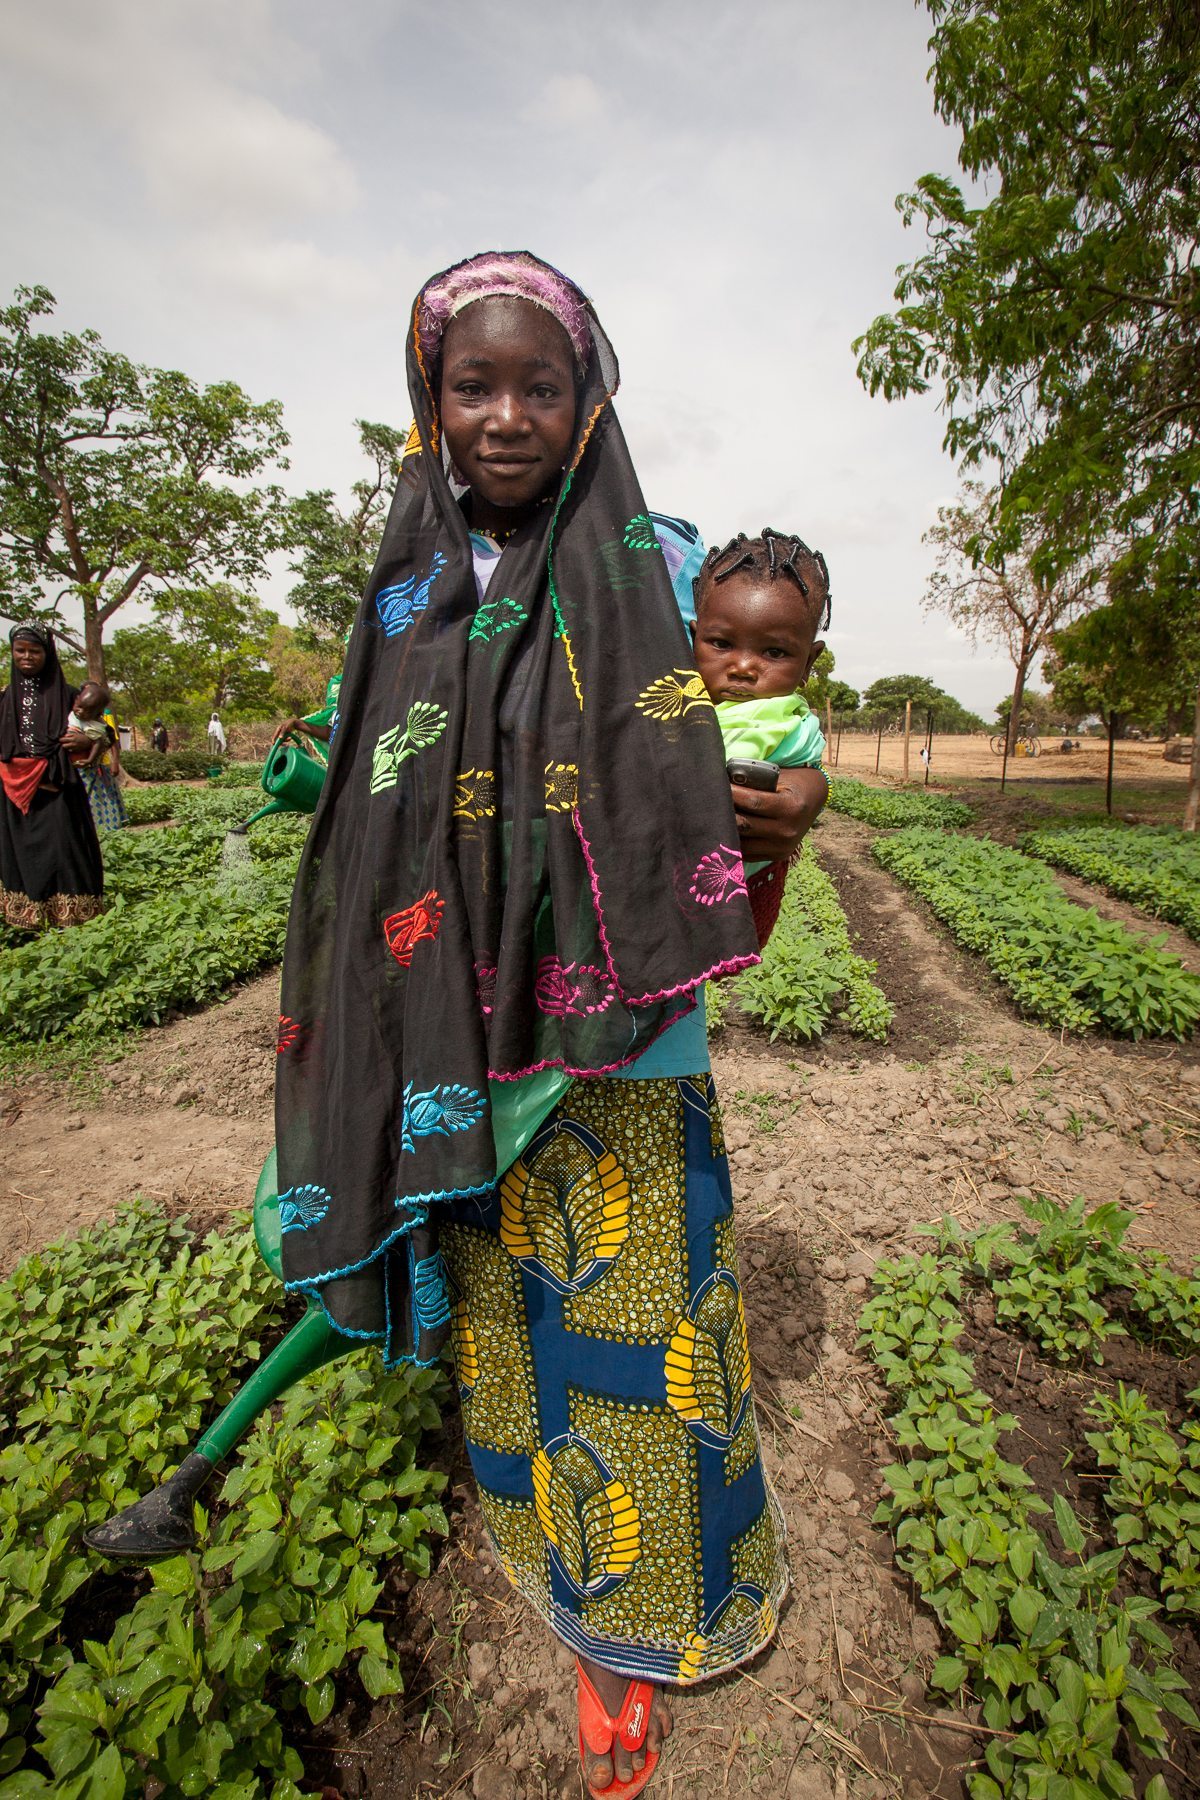 Las mujeres son el pilar de los hogares menos desarrollados de África. Imagen cedida por Fundación BBVA